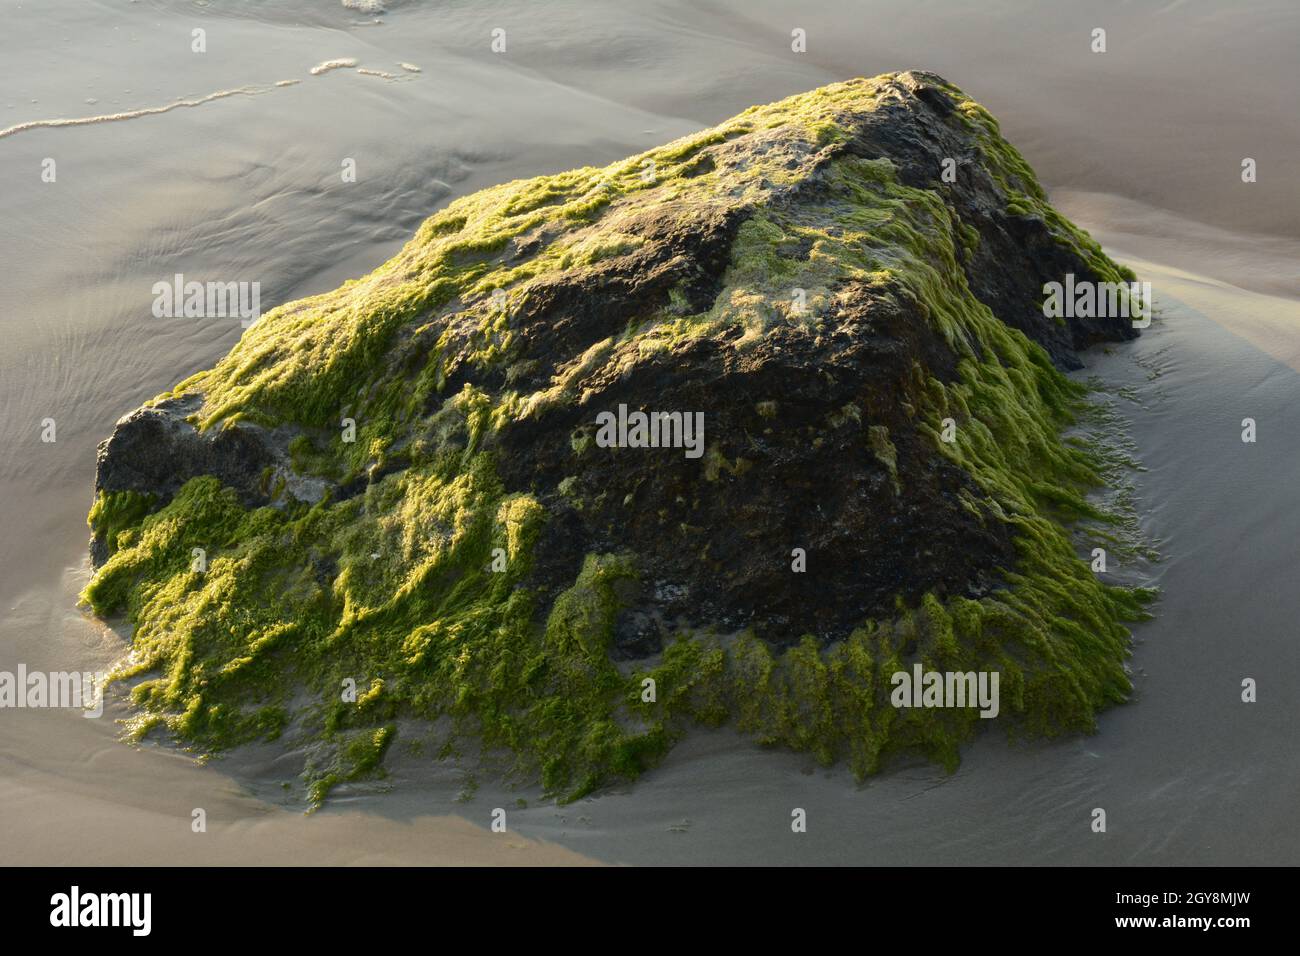 Rochers couverts d'algues vertes sur la plage de la côte de mer. Algues de mer ou mousse verte coincée sur la pierre. Rochers couverts d'algues vertes dans l'eau de mer. Banque D'Images